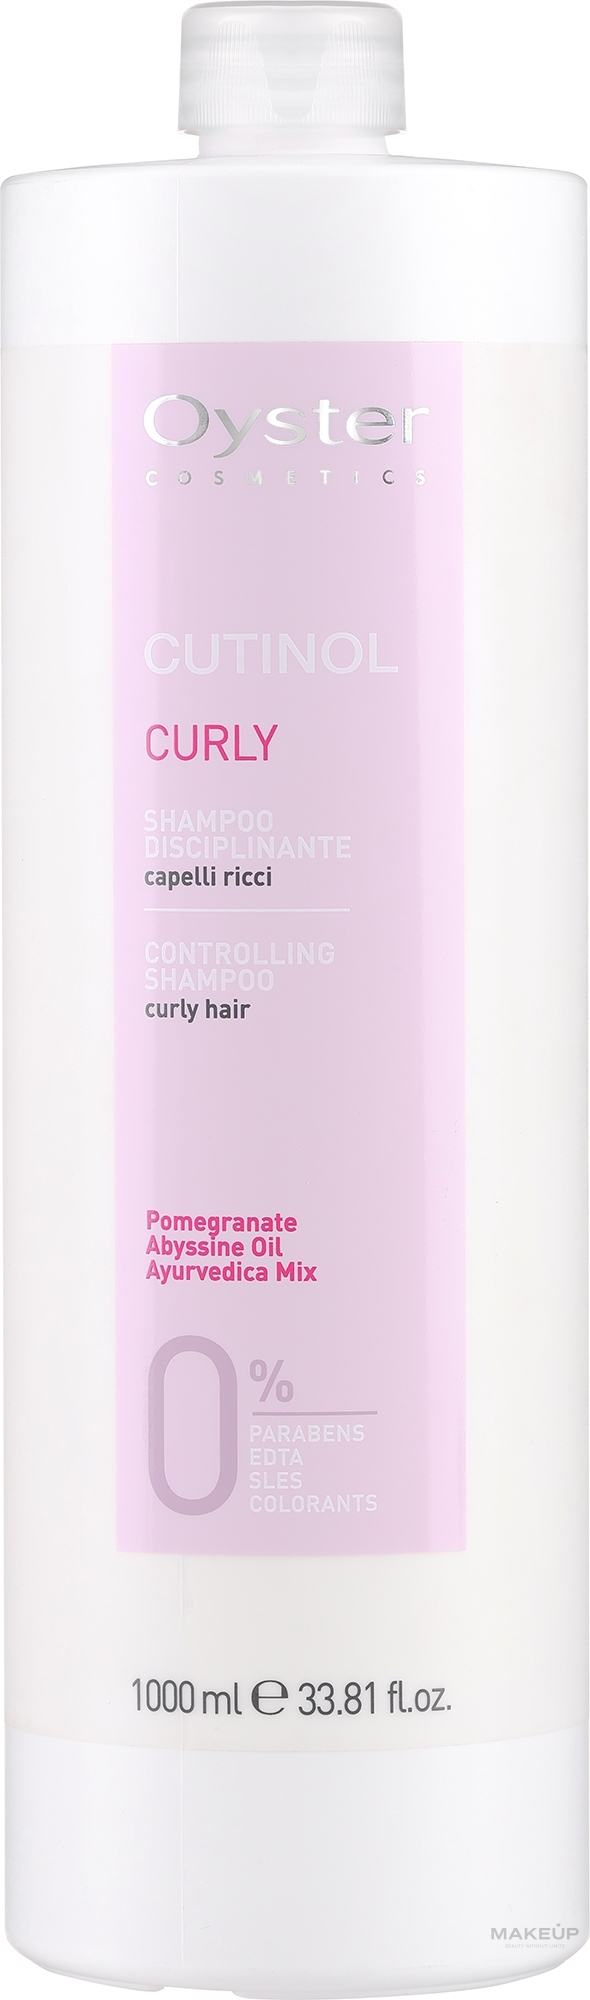 Szampon do włosów kręconych - Oyster Cosmetics Cutinol Curly Shampoo — Zdjęcie 1000 ml